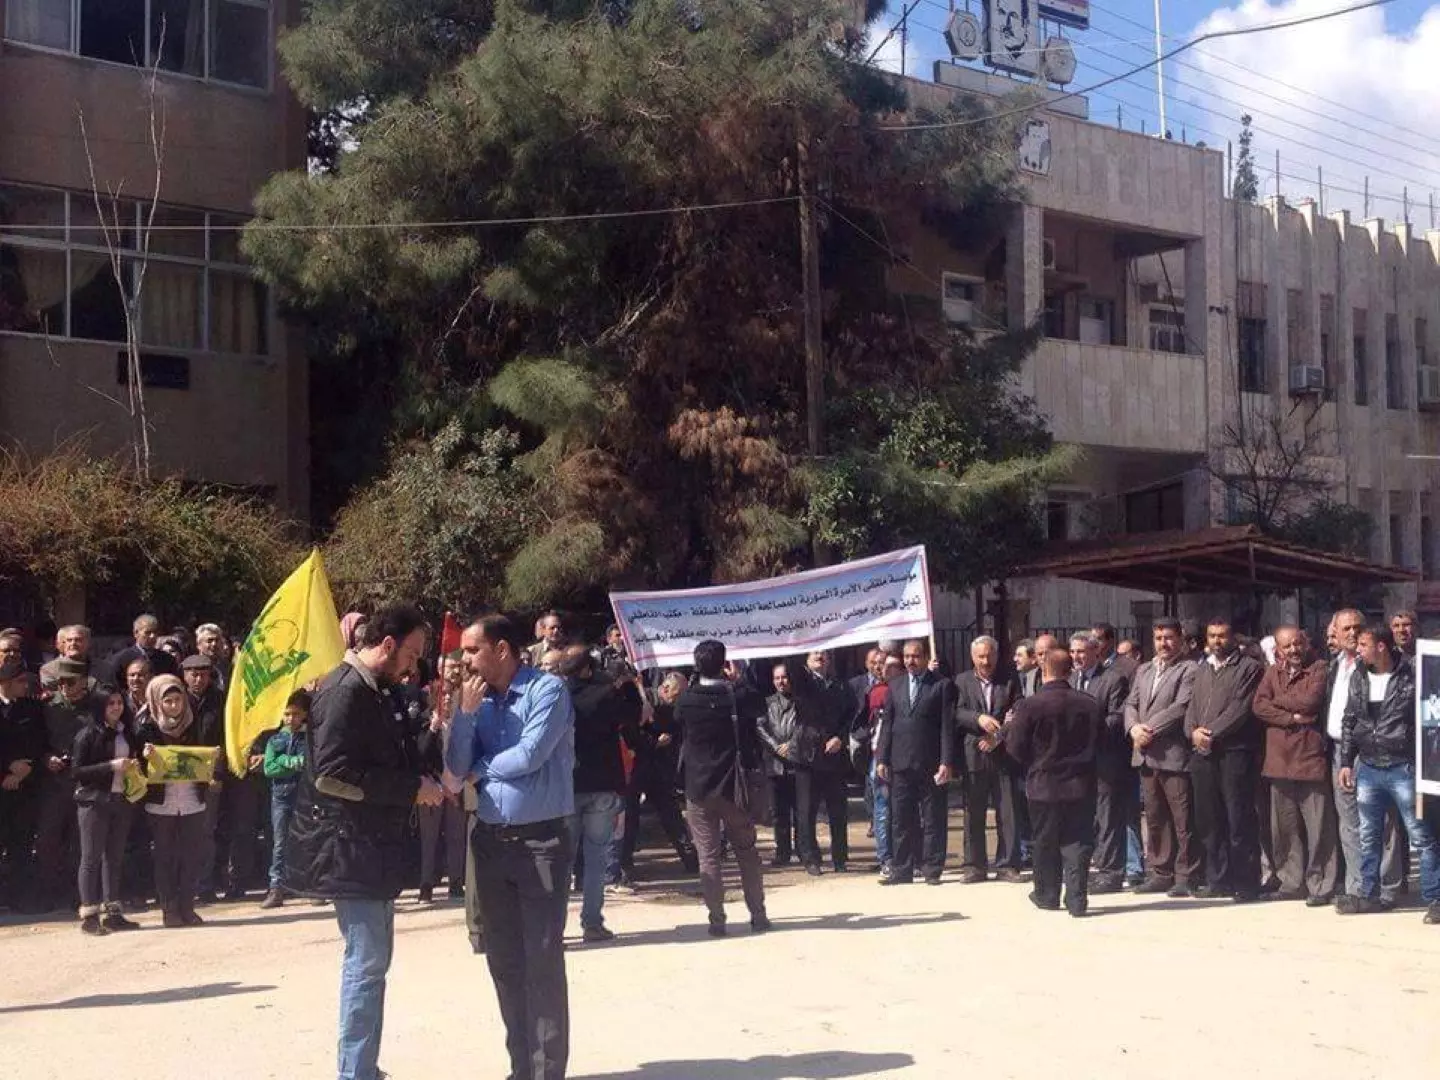 وسط غياب قوات الأساييش الكردية... مؤيدون للأسد يتظاهرون في القامشلي لدعم حزب الله الإرهابي